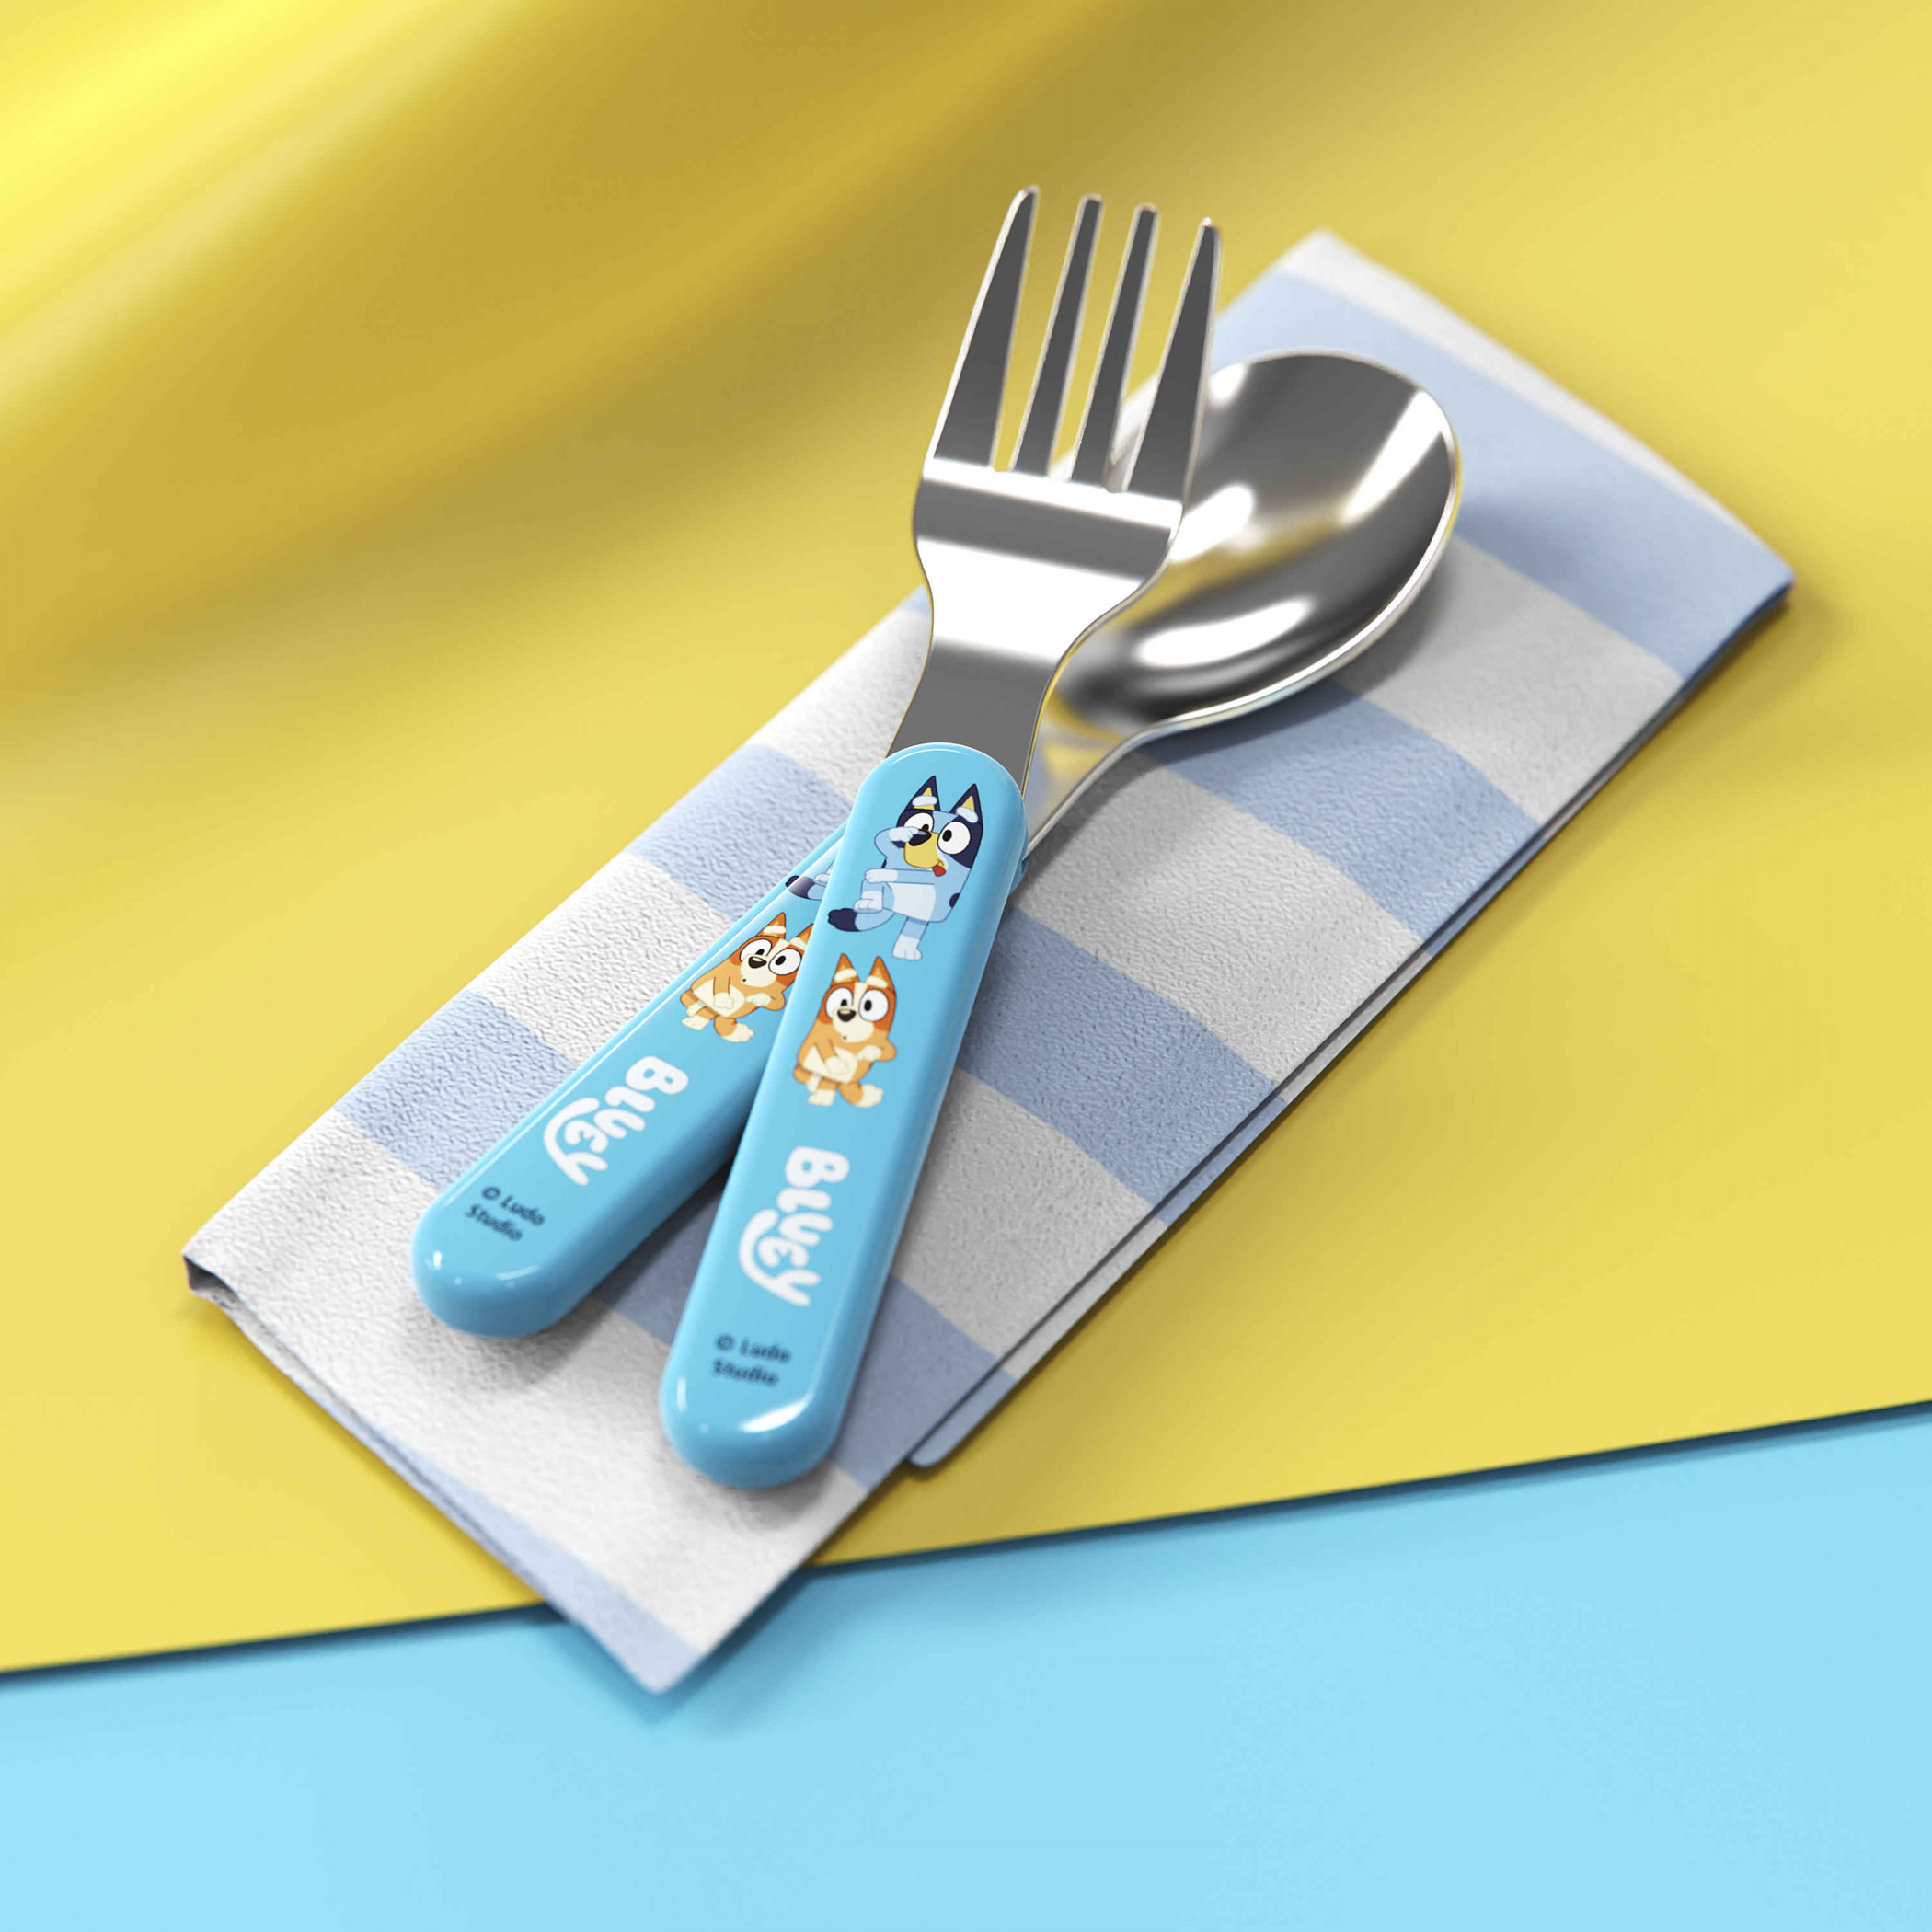 Bluey Kid's Fork and Spoon Dinner Utensils